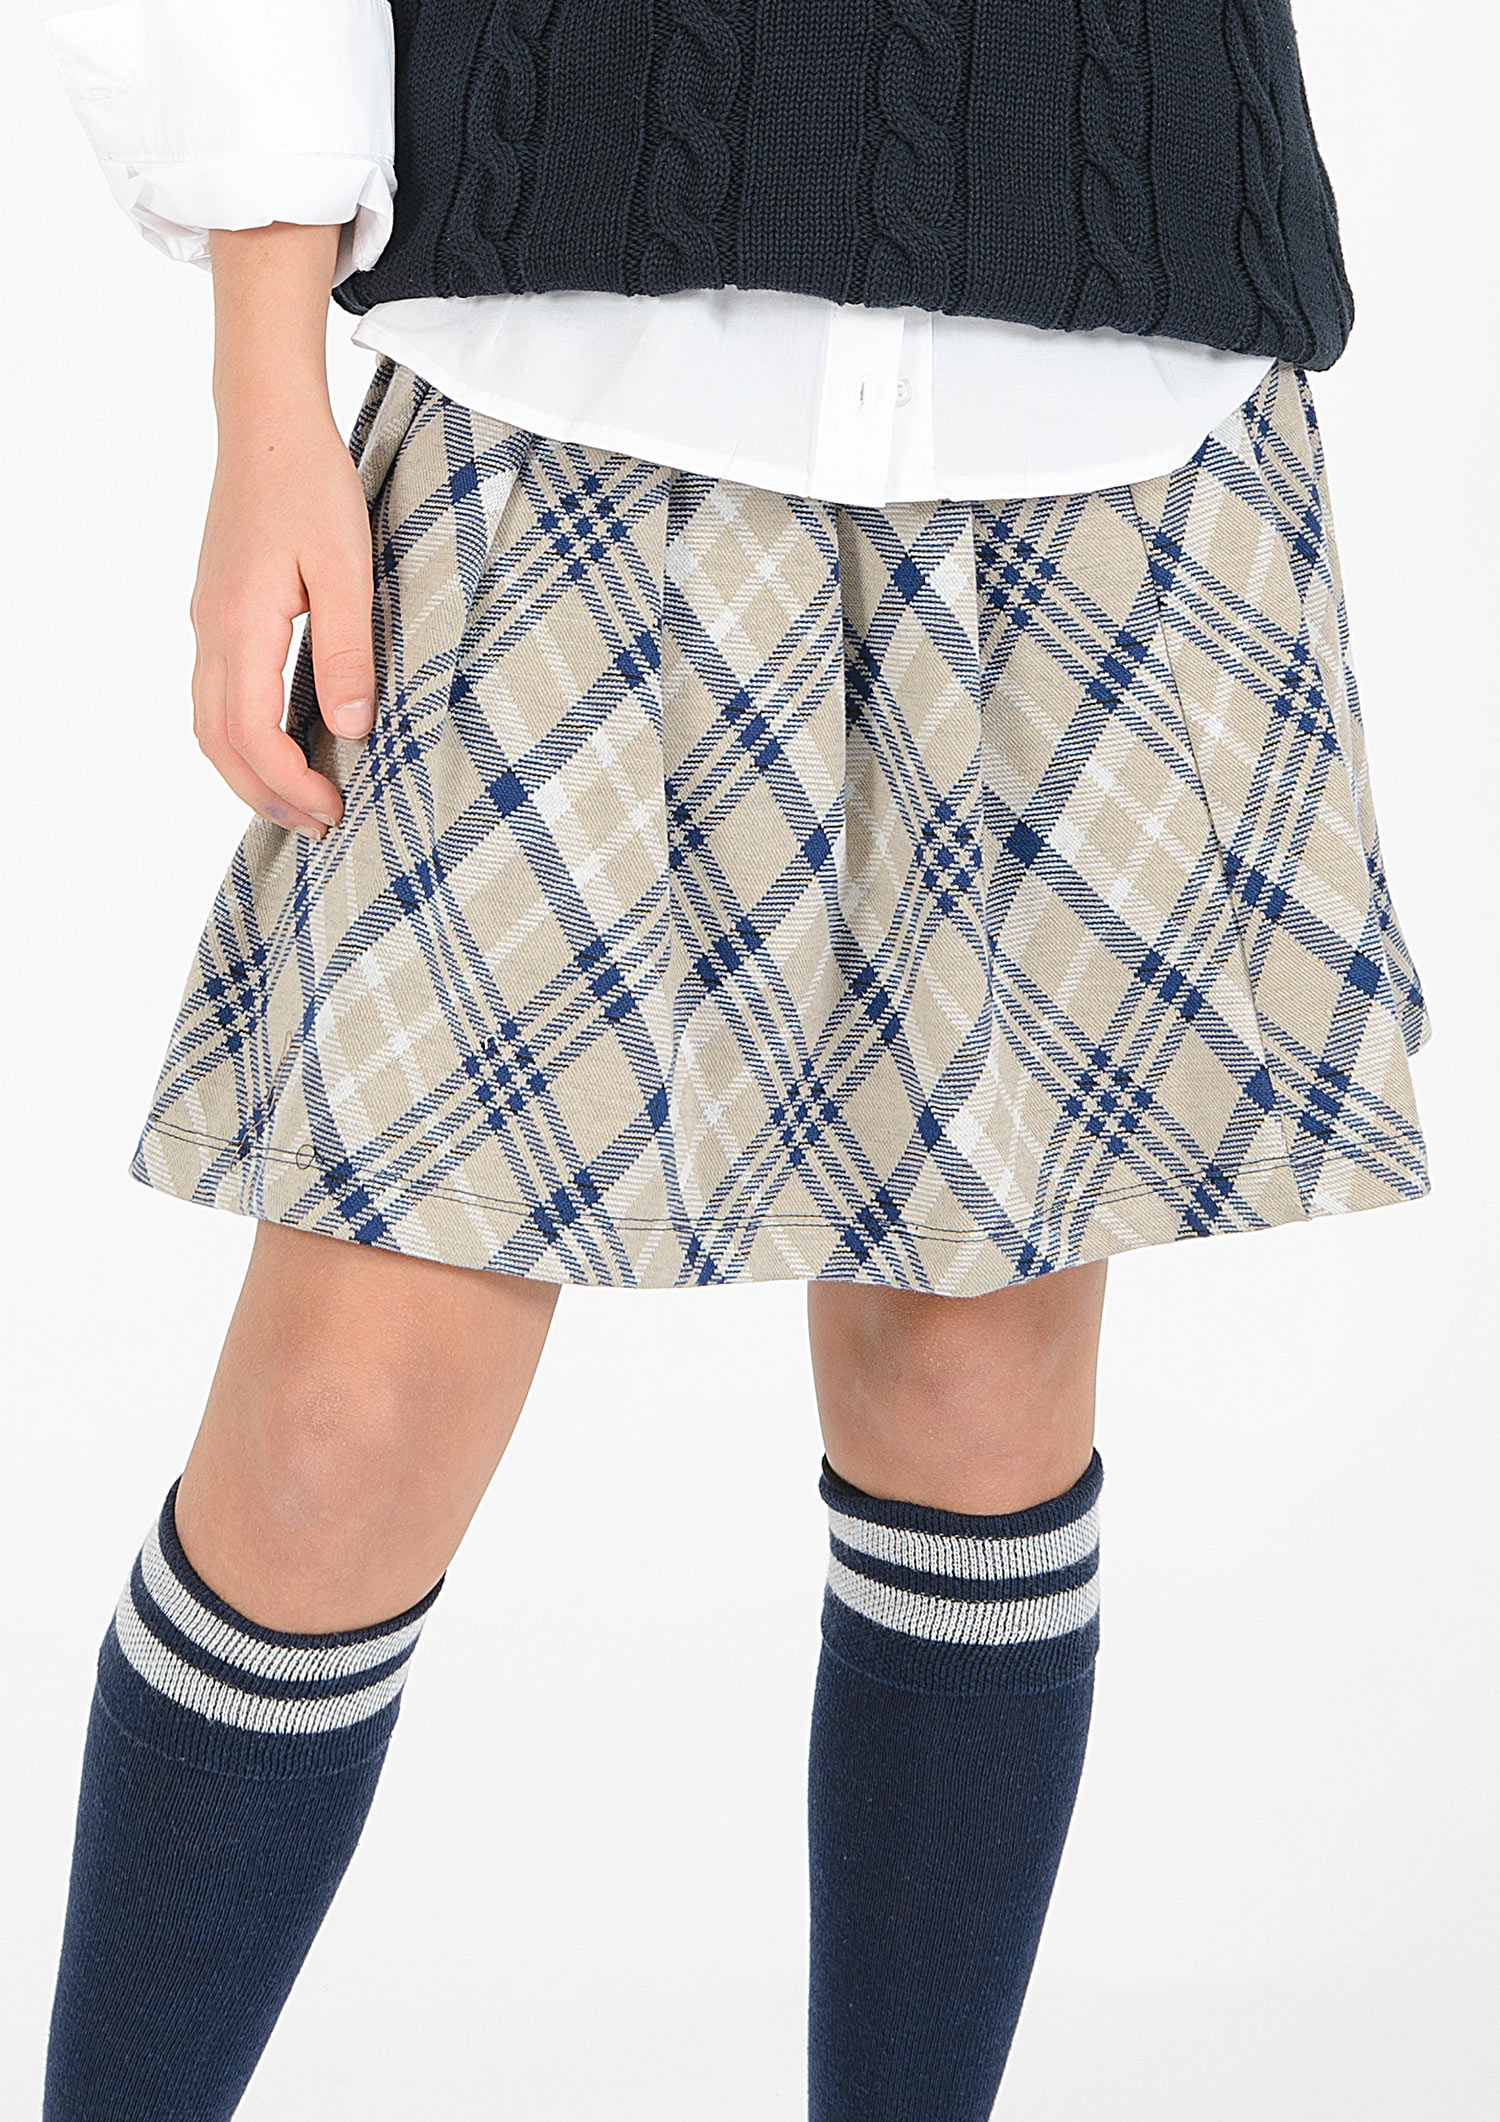 3264-Girls Pleated Skirt